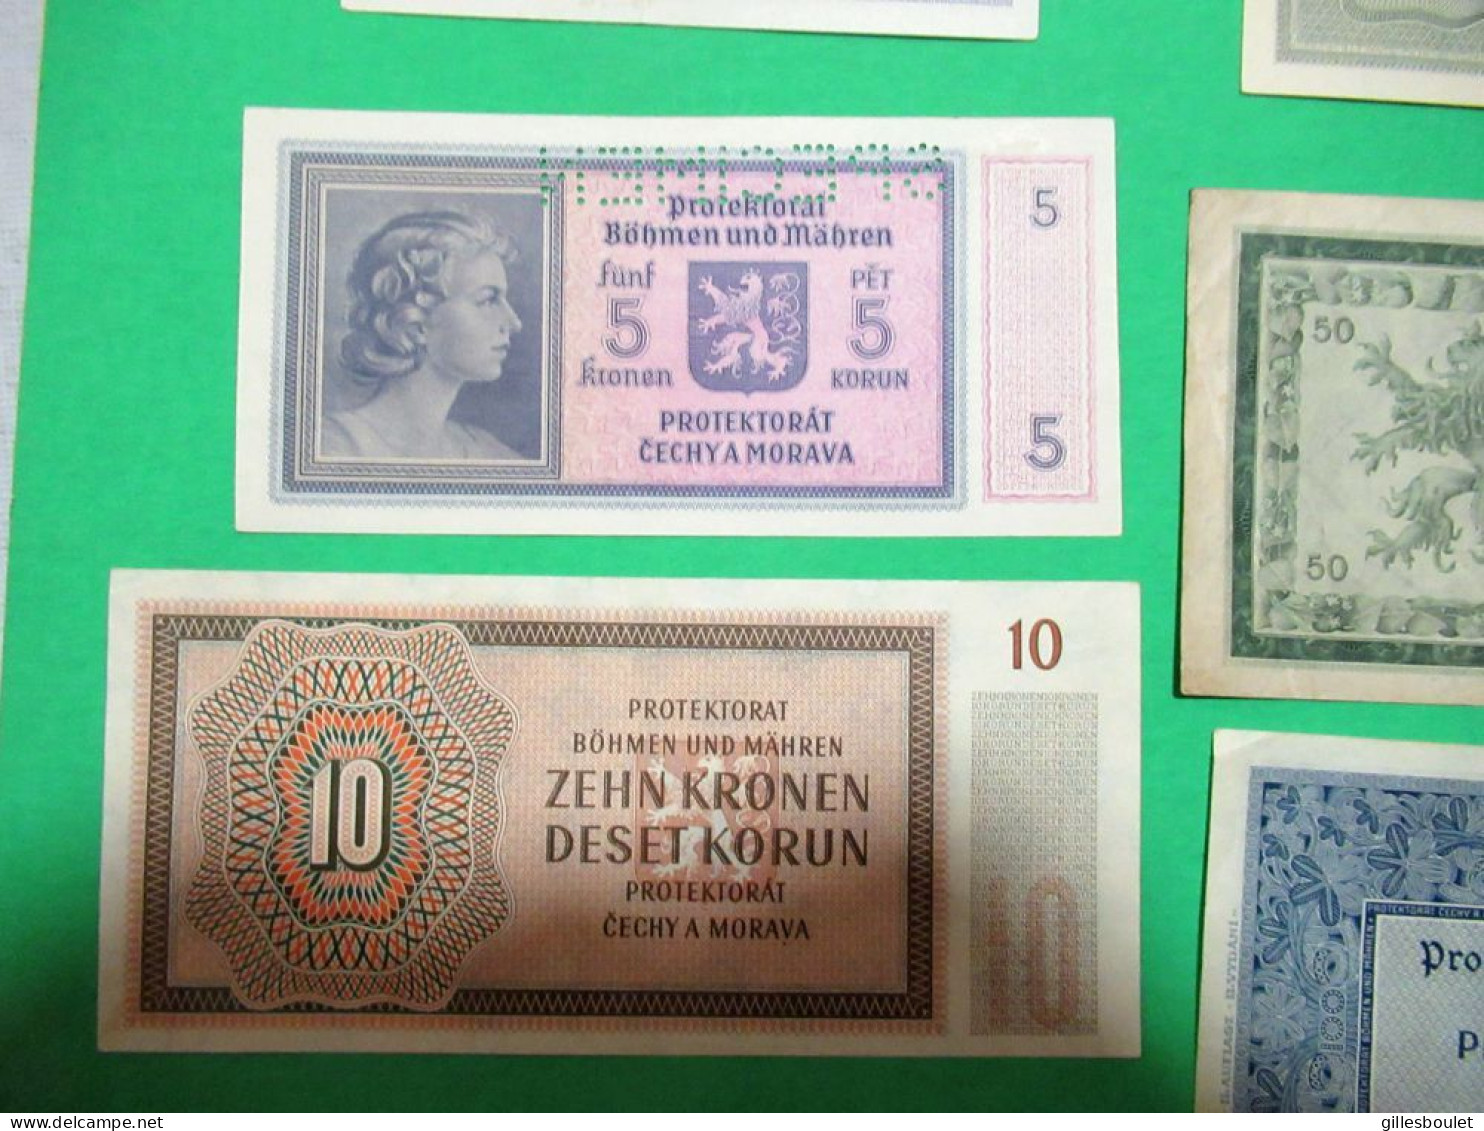 6 billets. Allemagne Protektorat Tchécoslovaquie 1940-45. Plusieurs spécimens. Rares billets. Voir description complète.